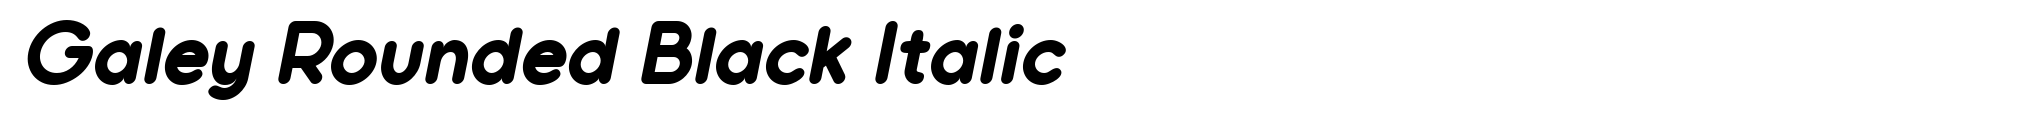 Galey Rounded Black Italic image